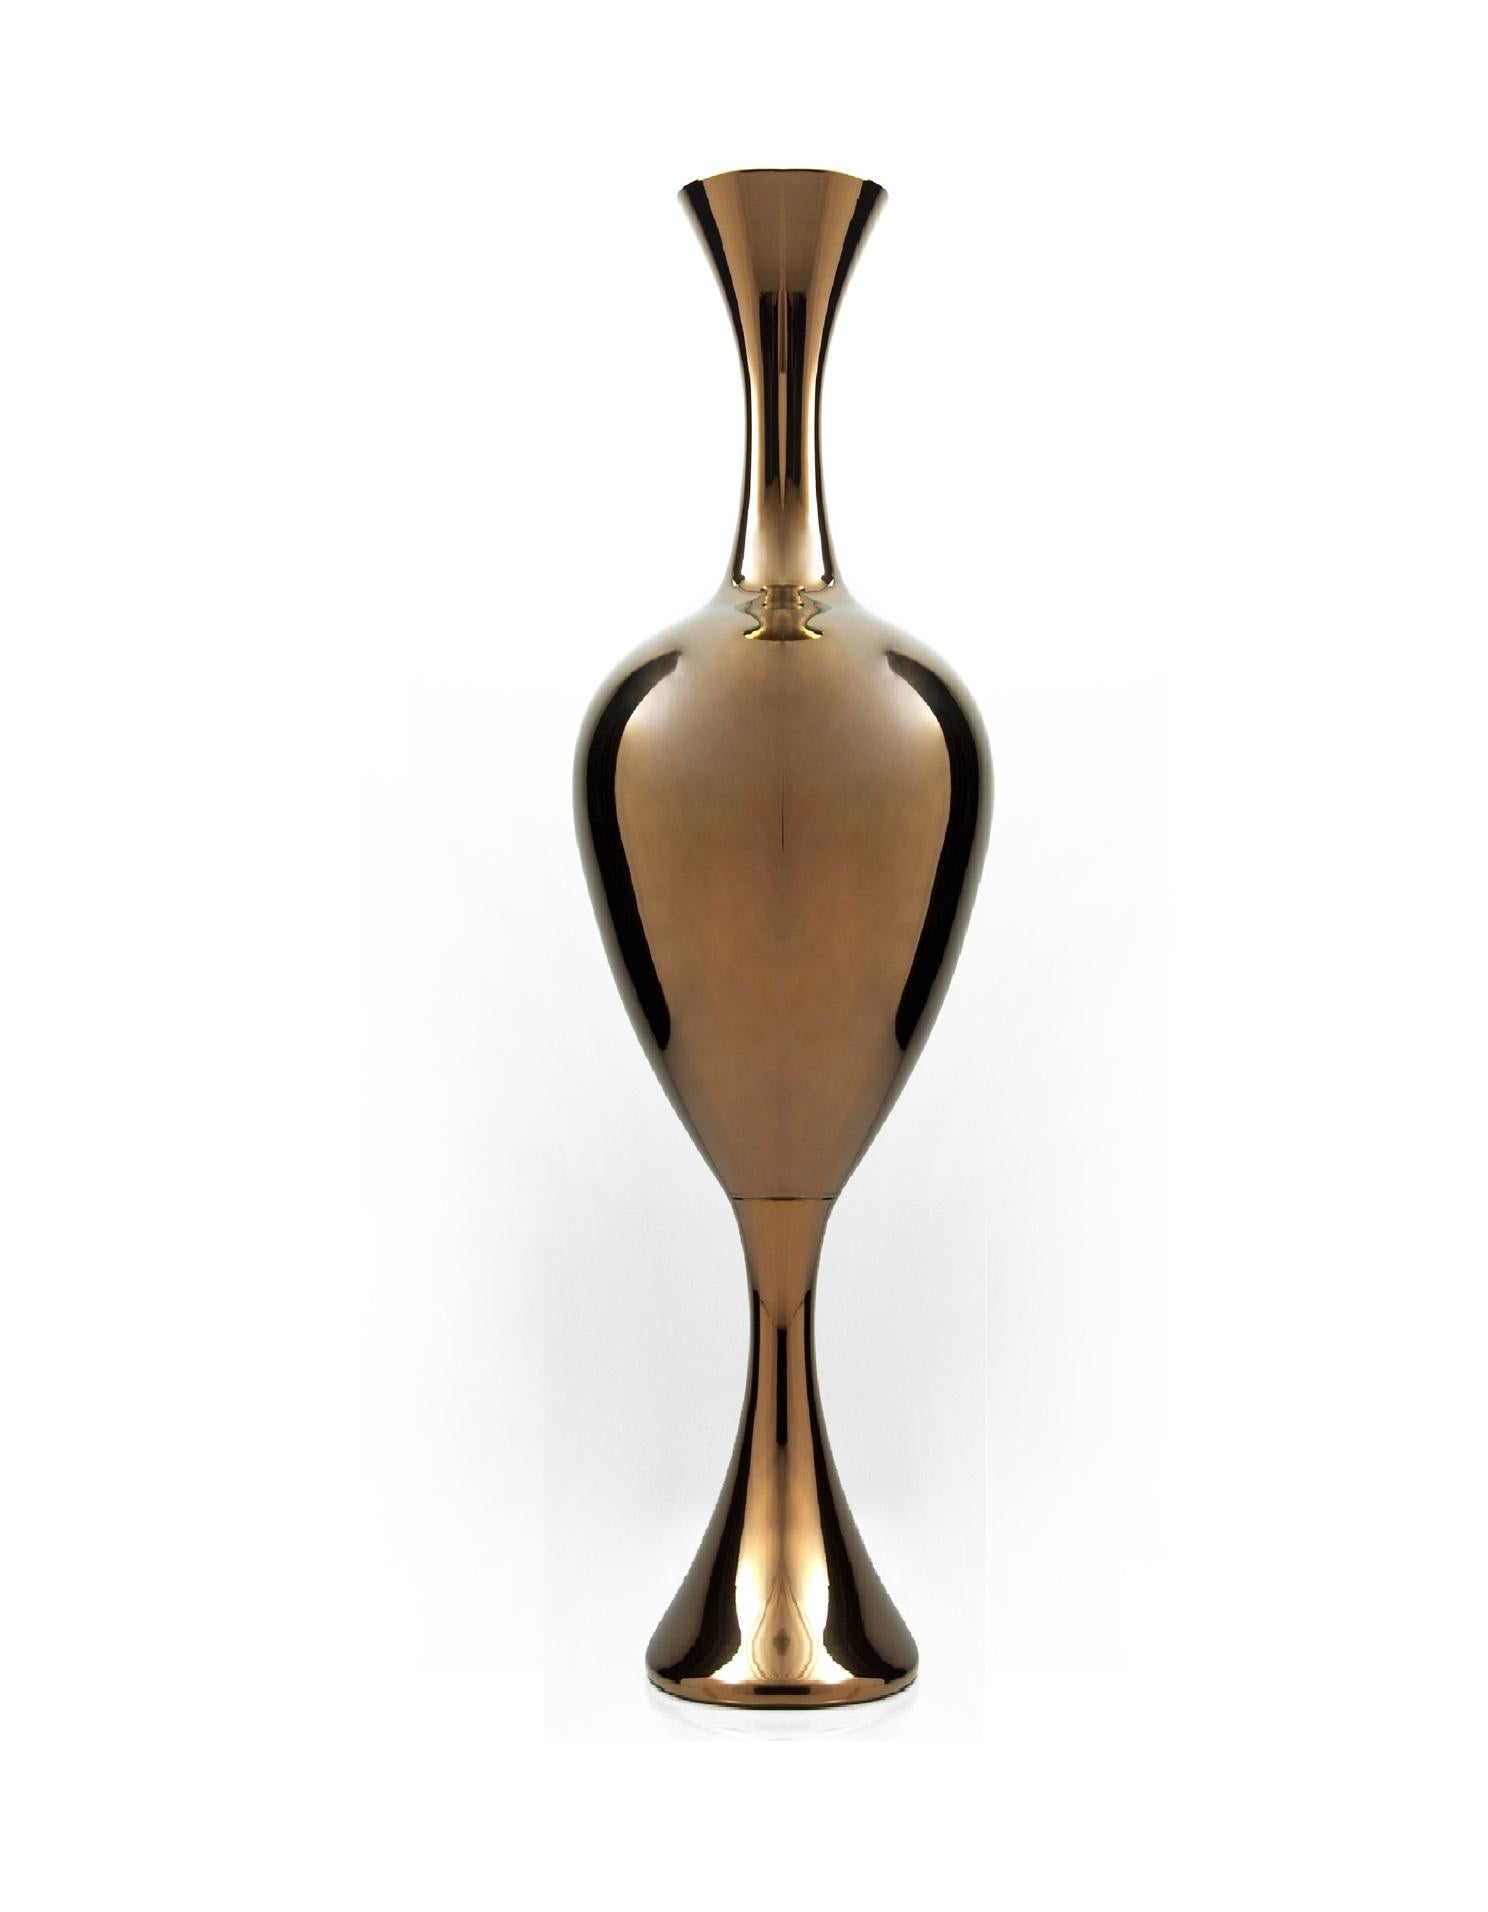 Vase aus Keramik, handgefertigt in Bronze
EVE-L - Code VS033. Maße: Höhe 200,0 cm, Durchmesser. 60.0 cm.